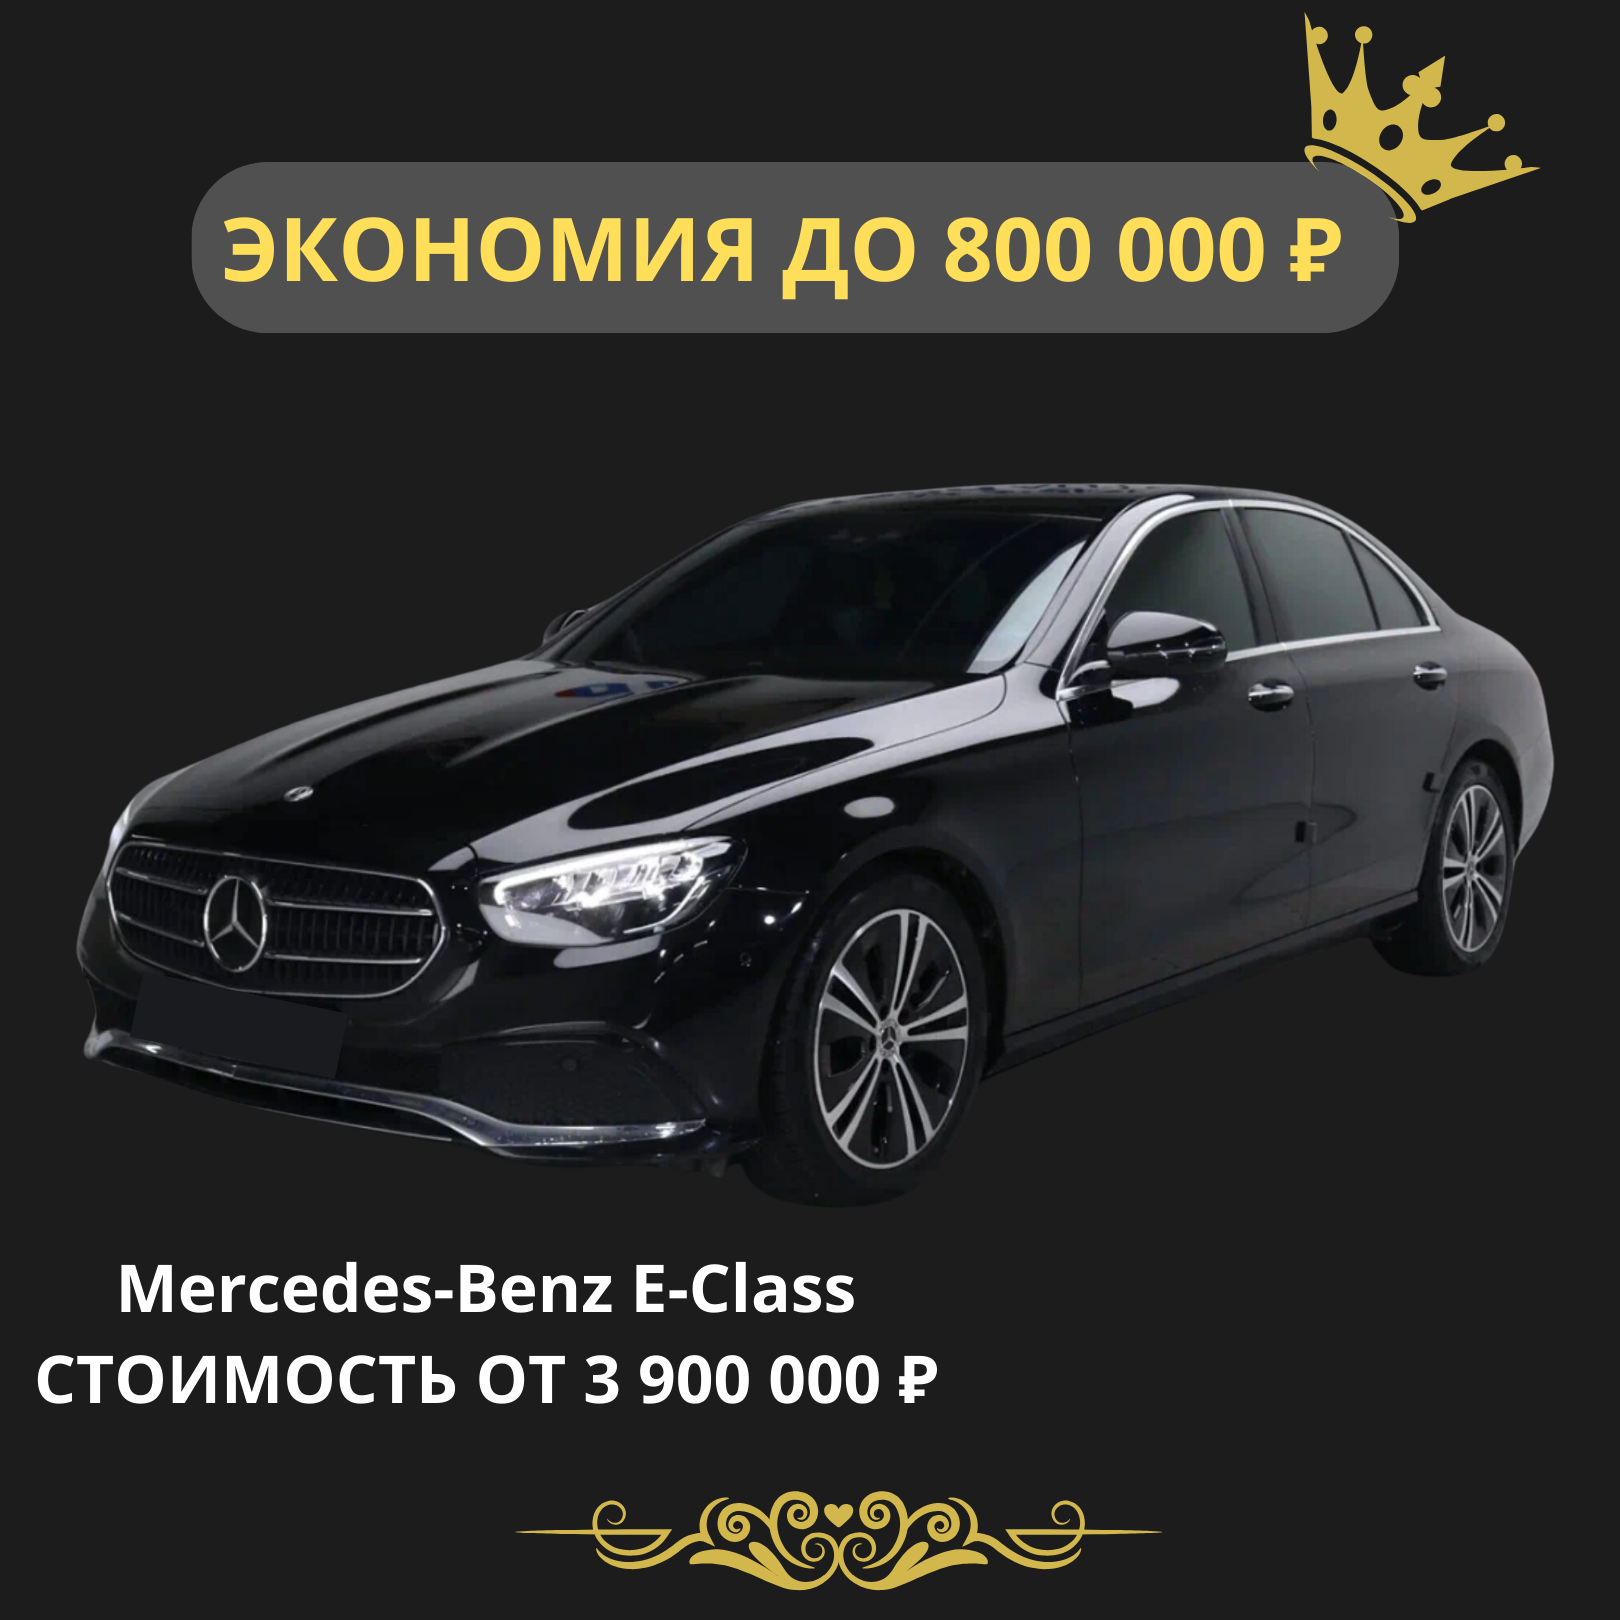 Mercedes-Benz E-Class. Стоимость от 3 900 000 рублей